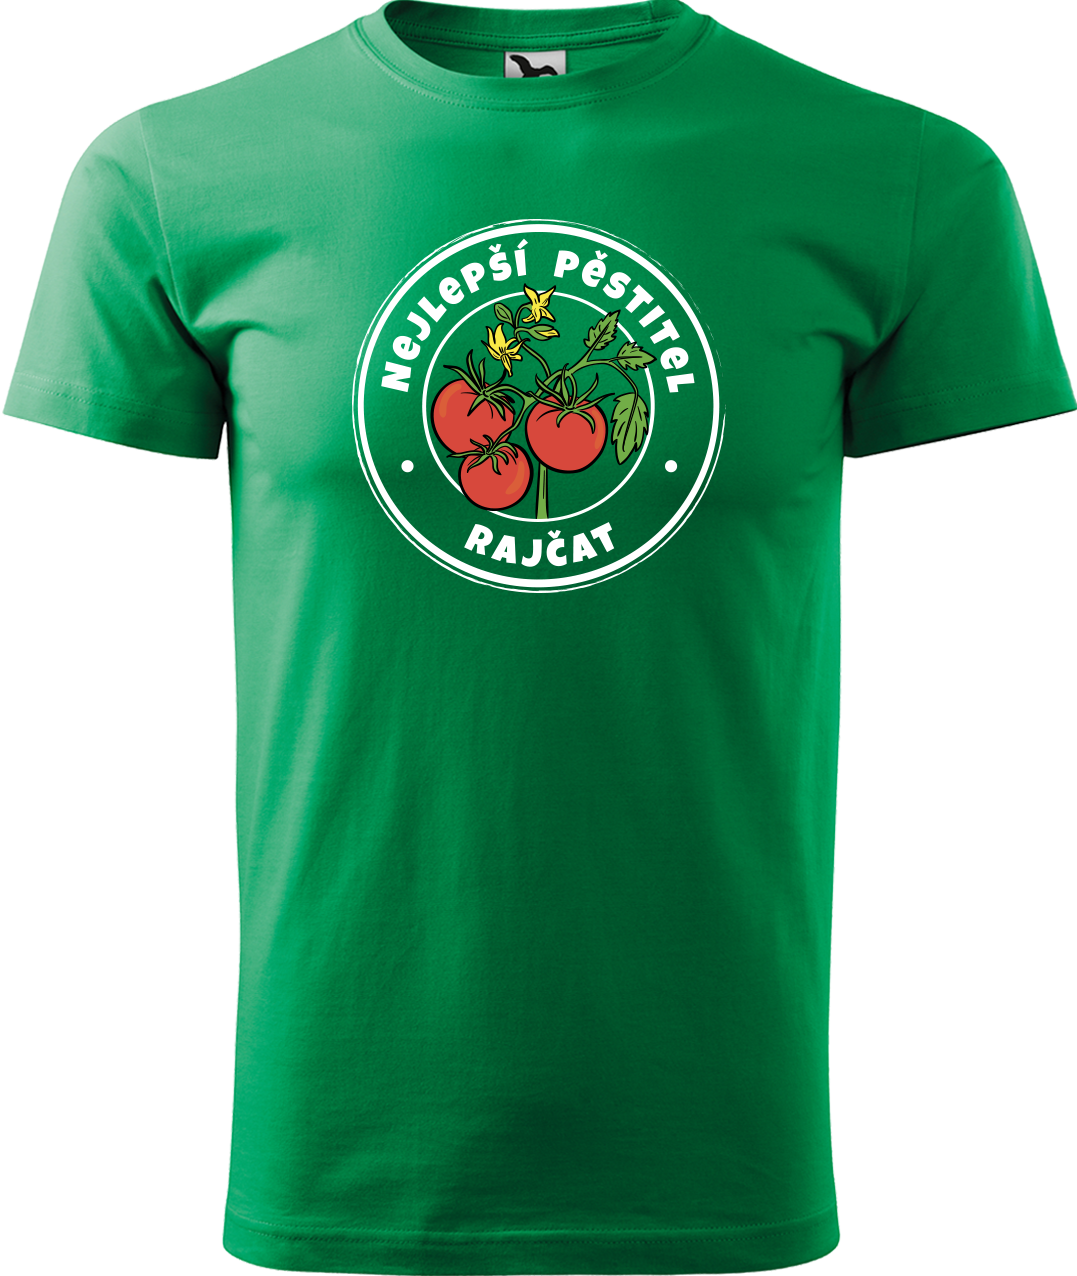 Tričko pro zahradníka - Nejlepší pěstitel rajčat Velikost: 2XL, Barva: Středně zelená (16)